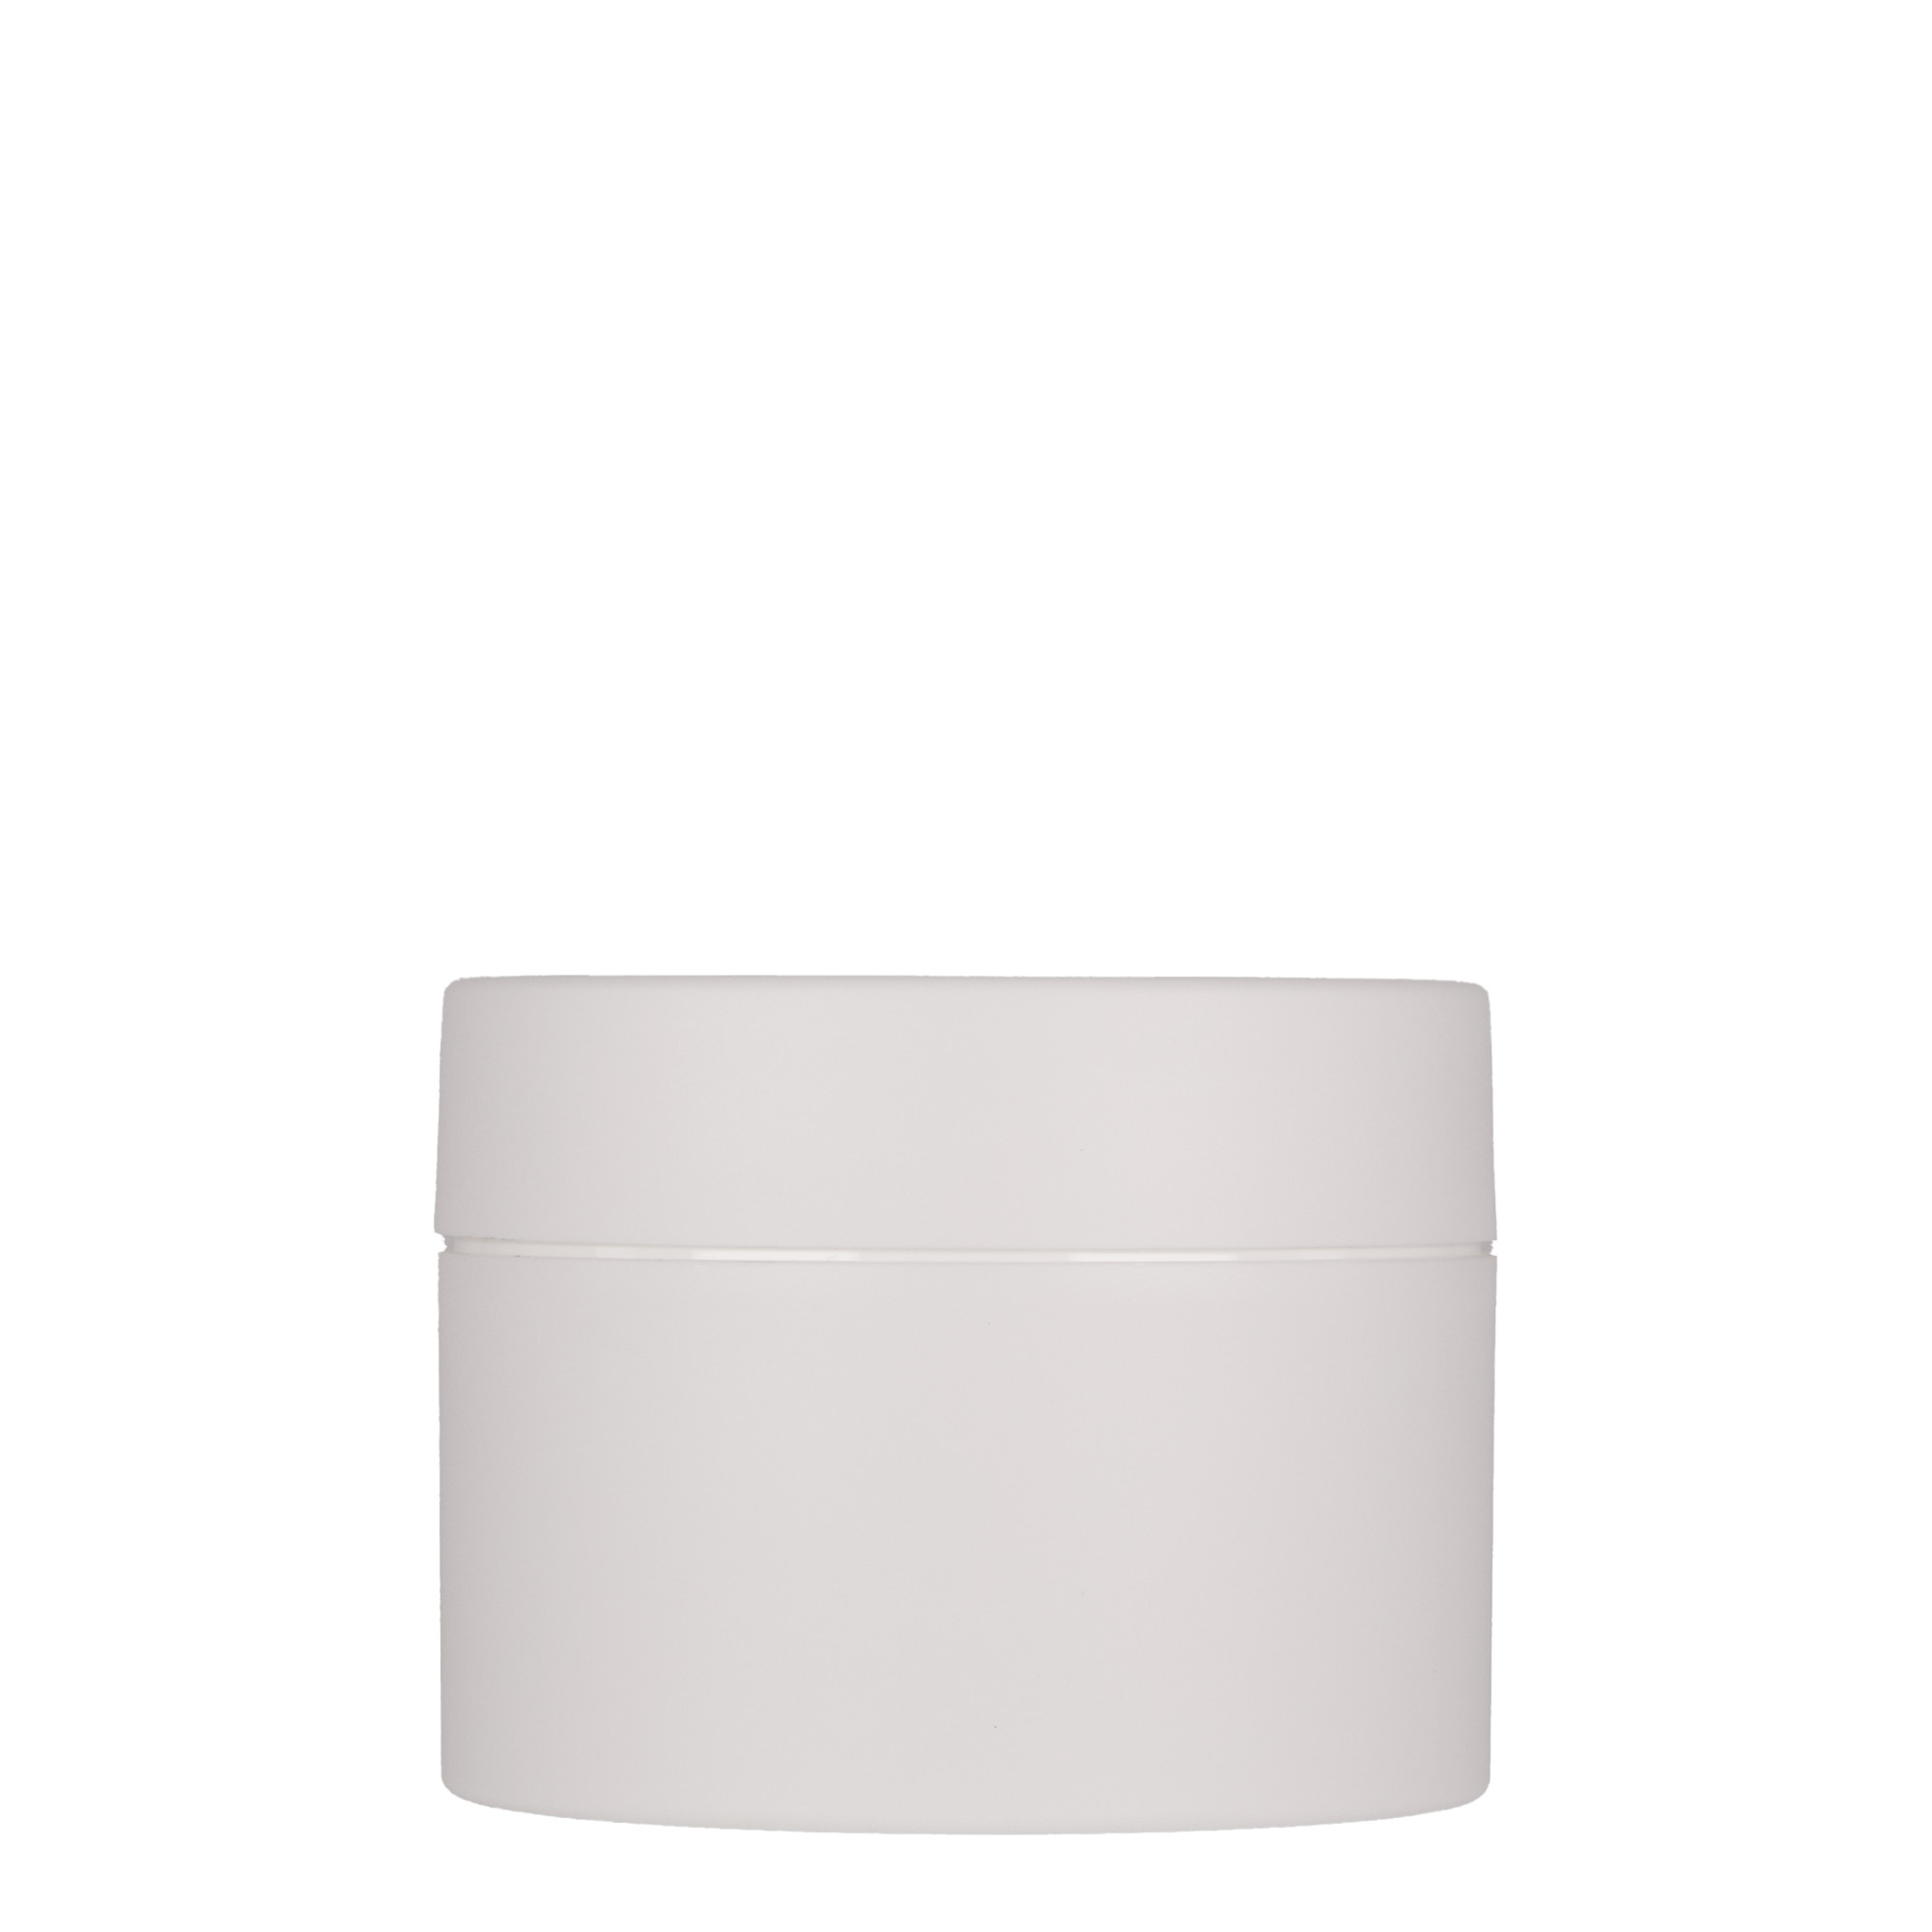 200 ml plastic jar 'Antonella', PP, white, closure: screw cap